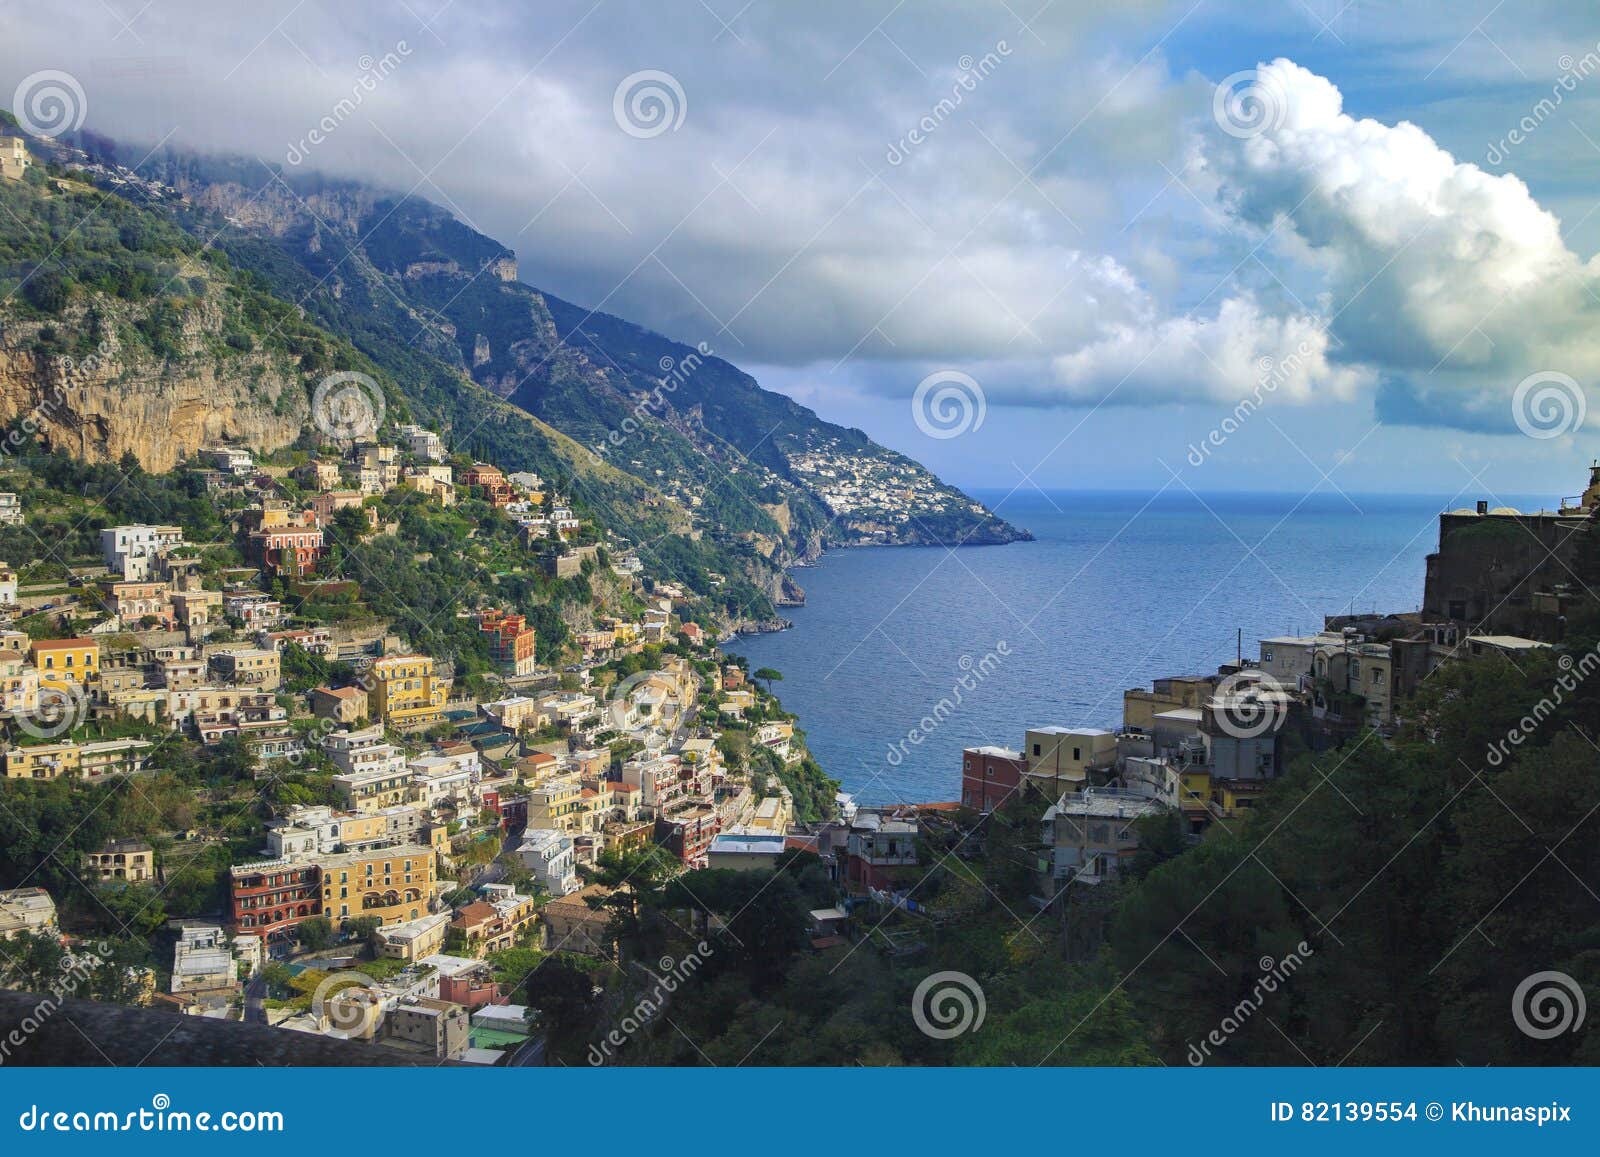 beautiful scenic of positaino mediterranian coastal south italy